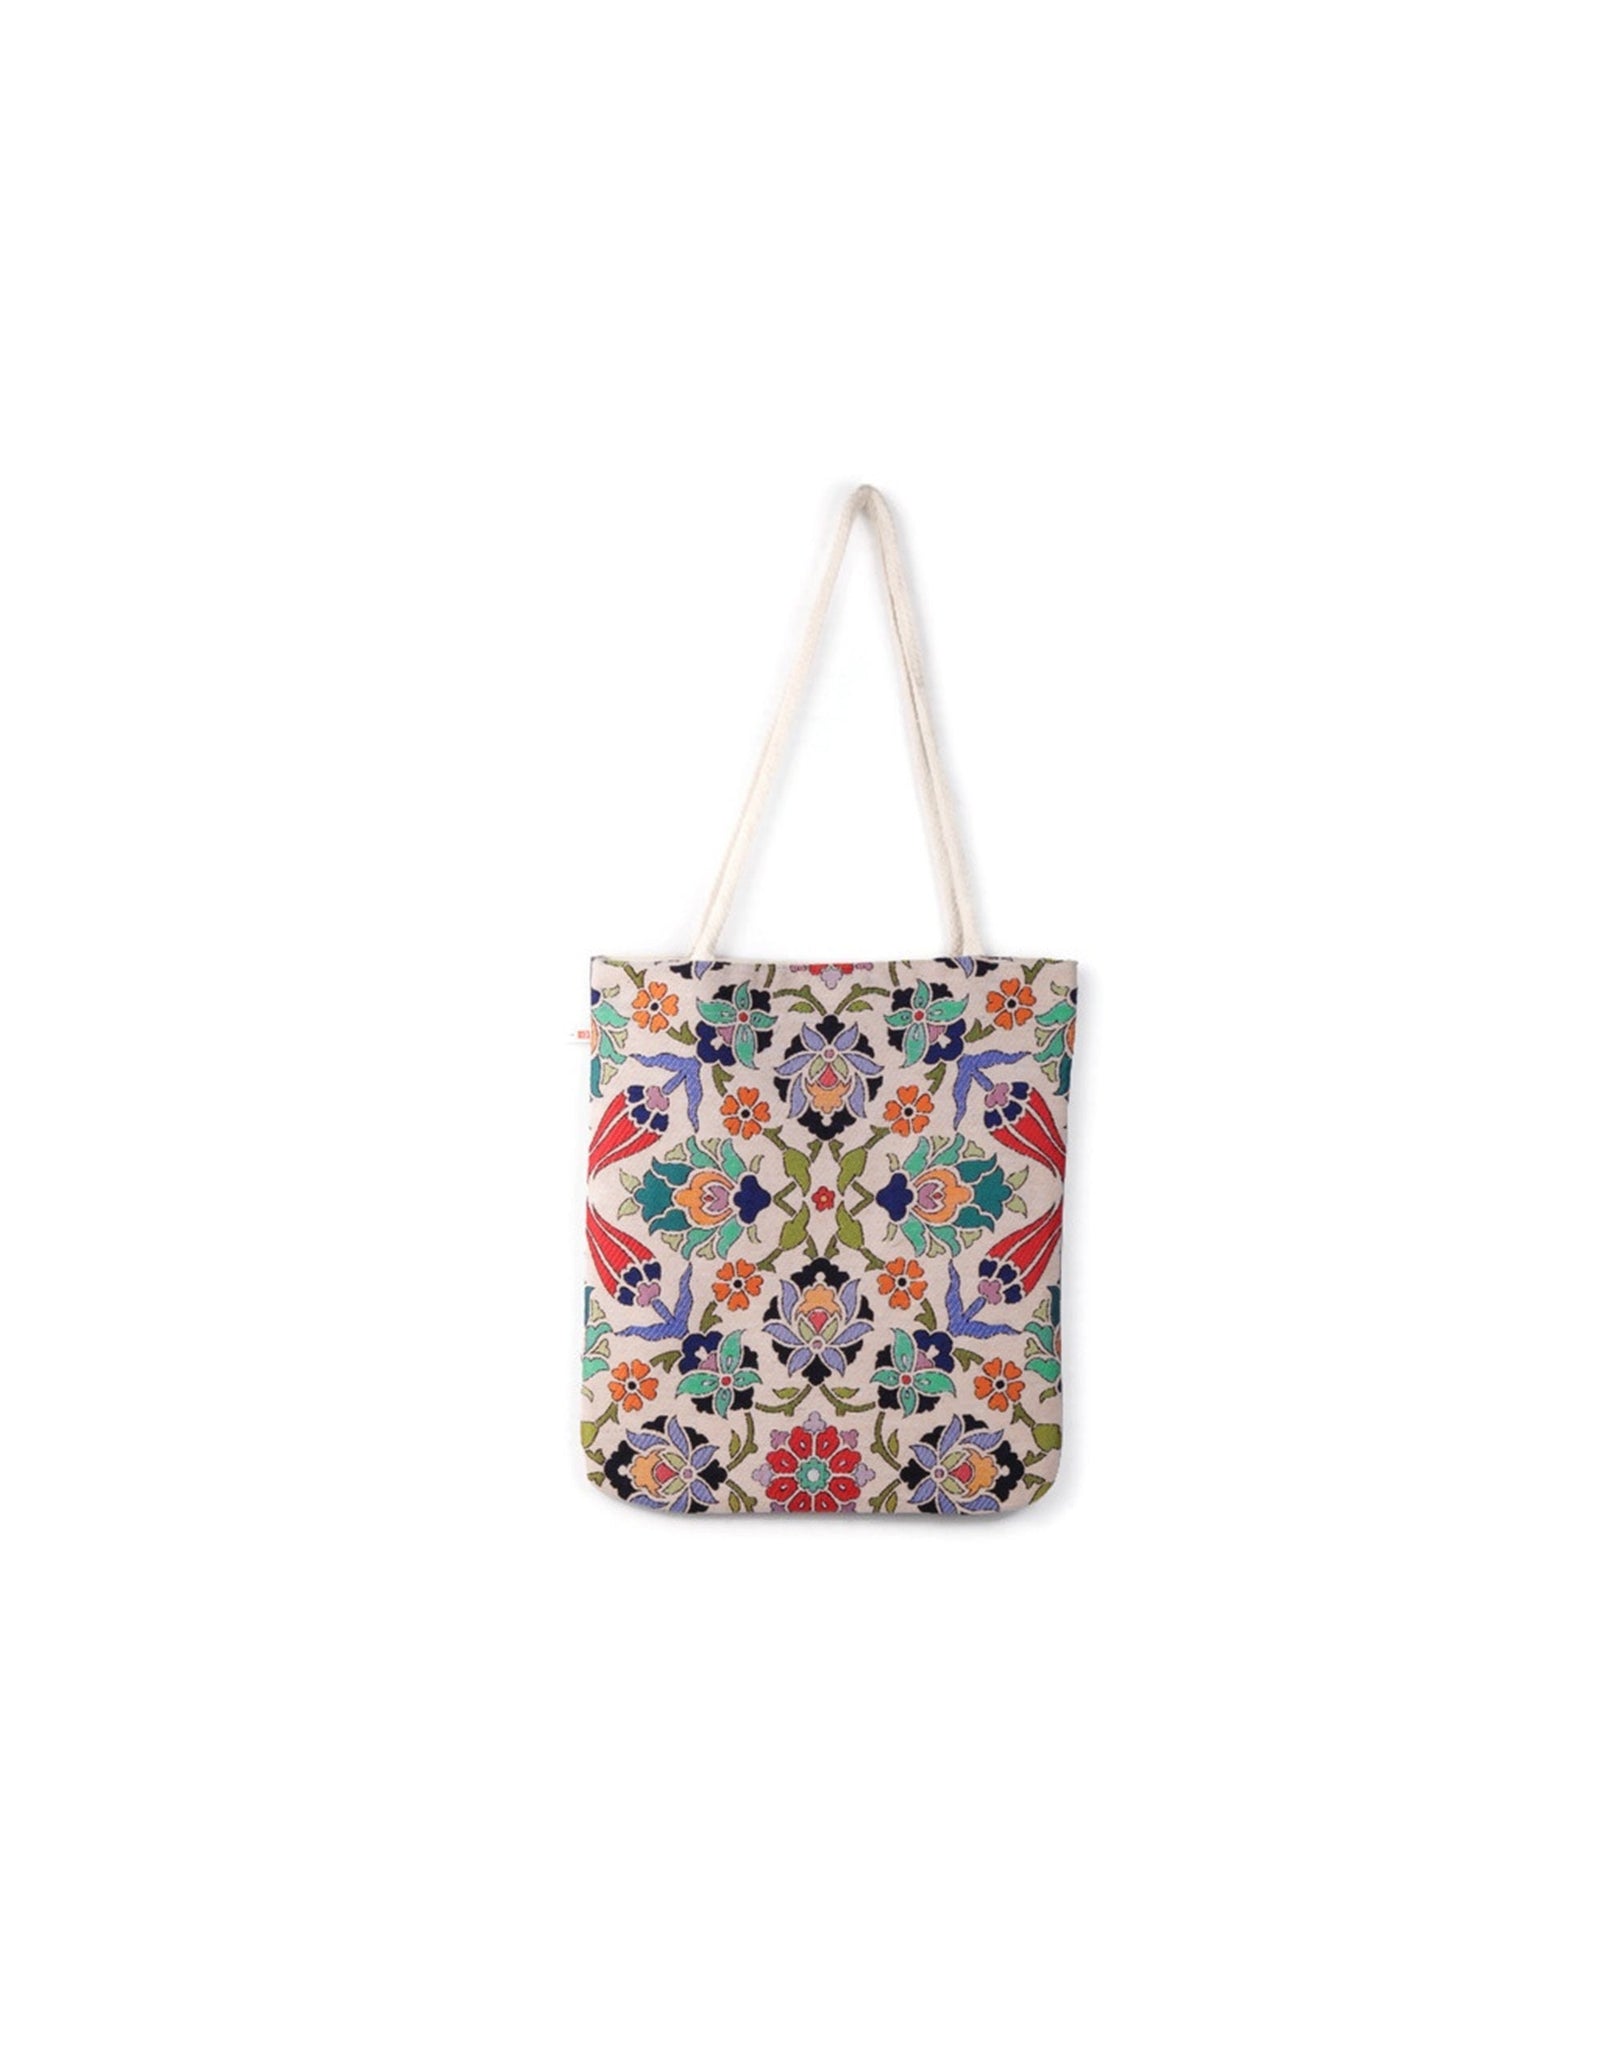 Denizli Vintage Style Ethnic Turkish Boho Shoulder Medium Tote Bag, Kilim Bag, Geometric Bag, Hippie Bag, Shoulder Bag